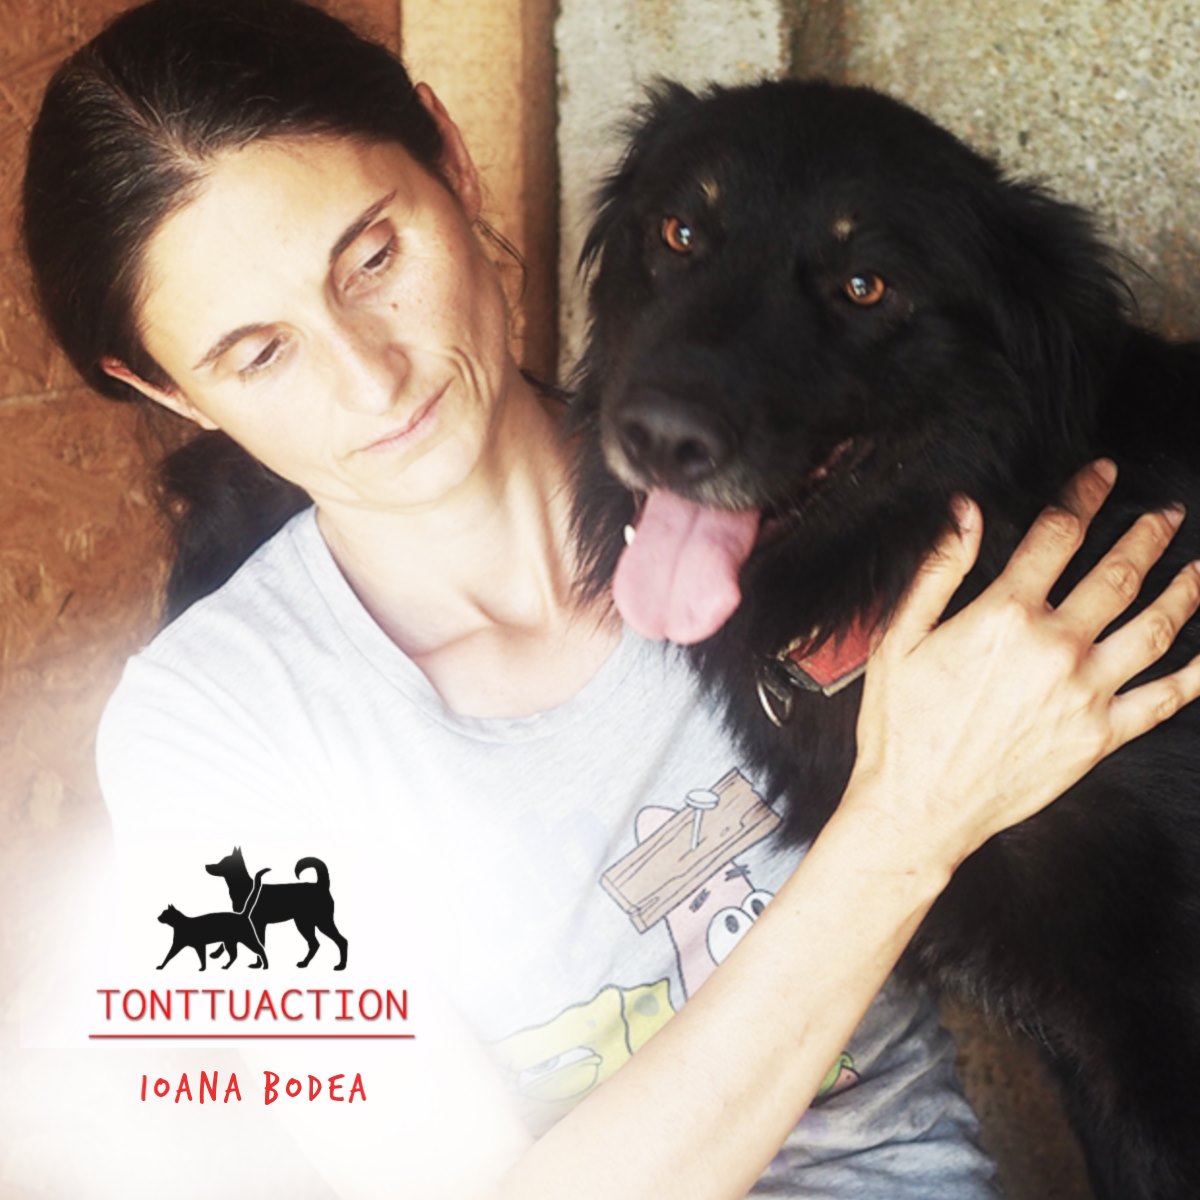 Tonttuactionin kuudes toive: Ioana Bodean joululahjatoive liittyy koirankoppeihin